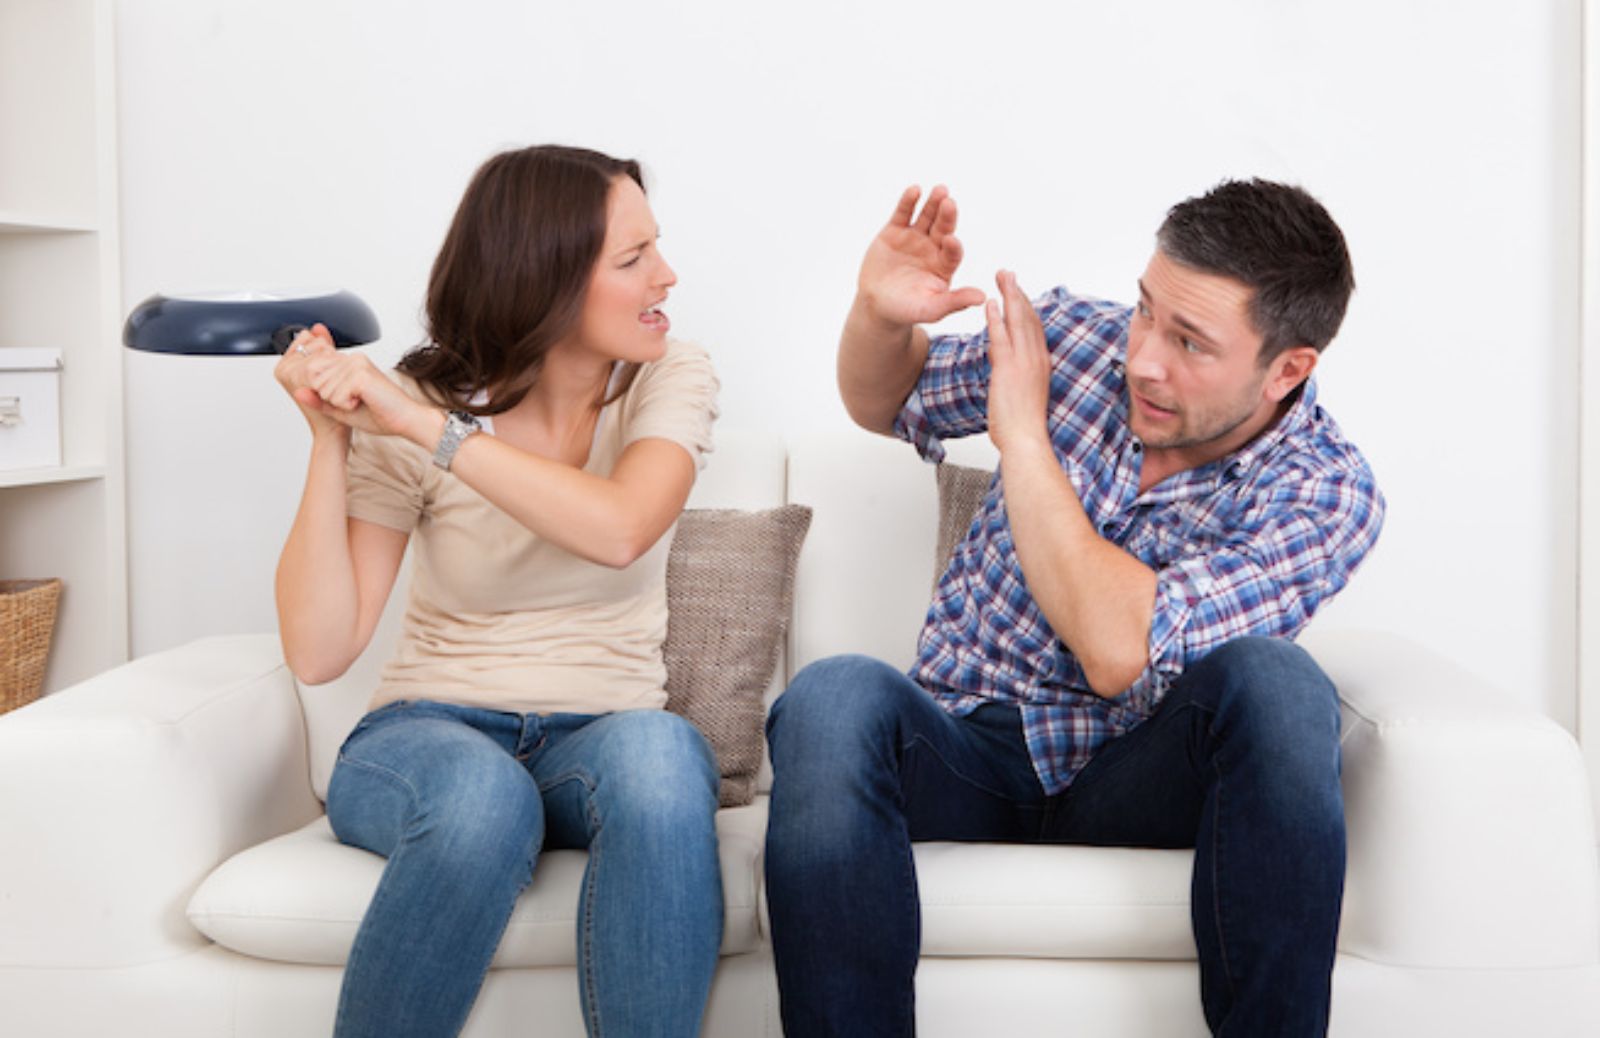 Come imparare a non scaricare la rabbia sul partner